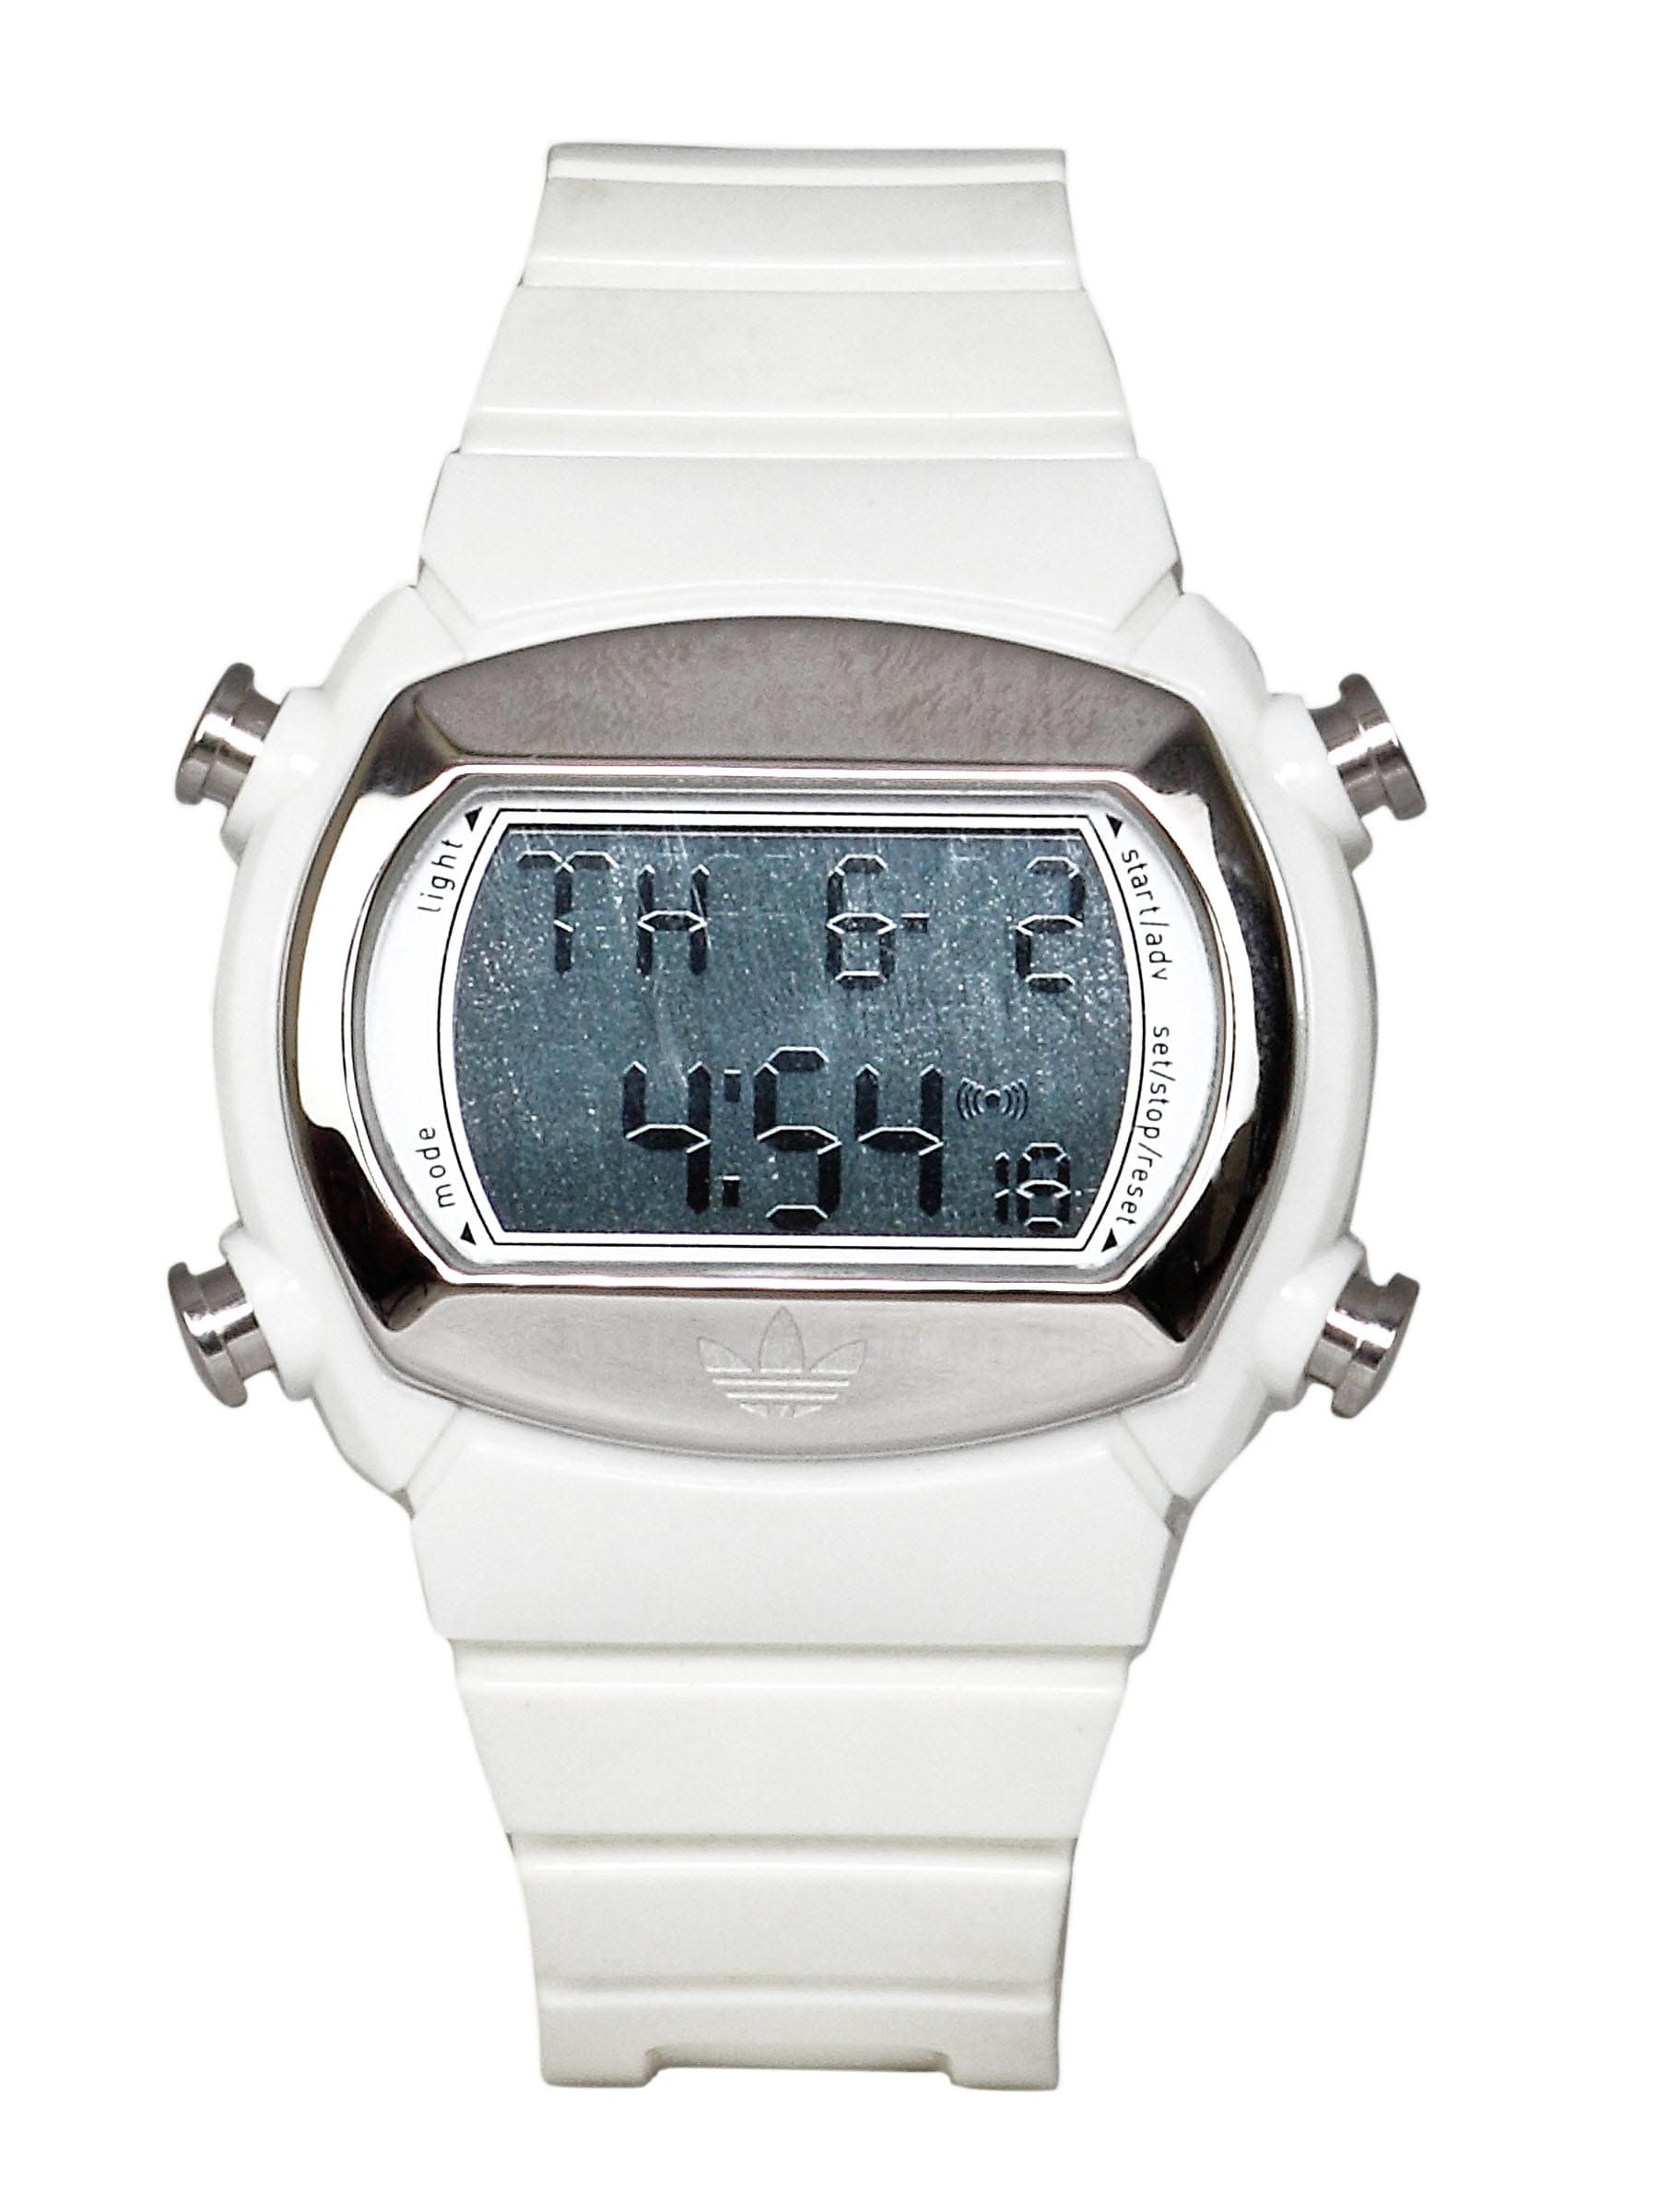 ADIDAS Unisex Originals White Watch